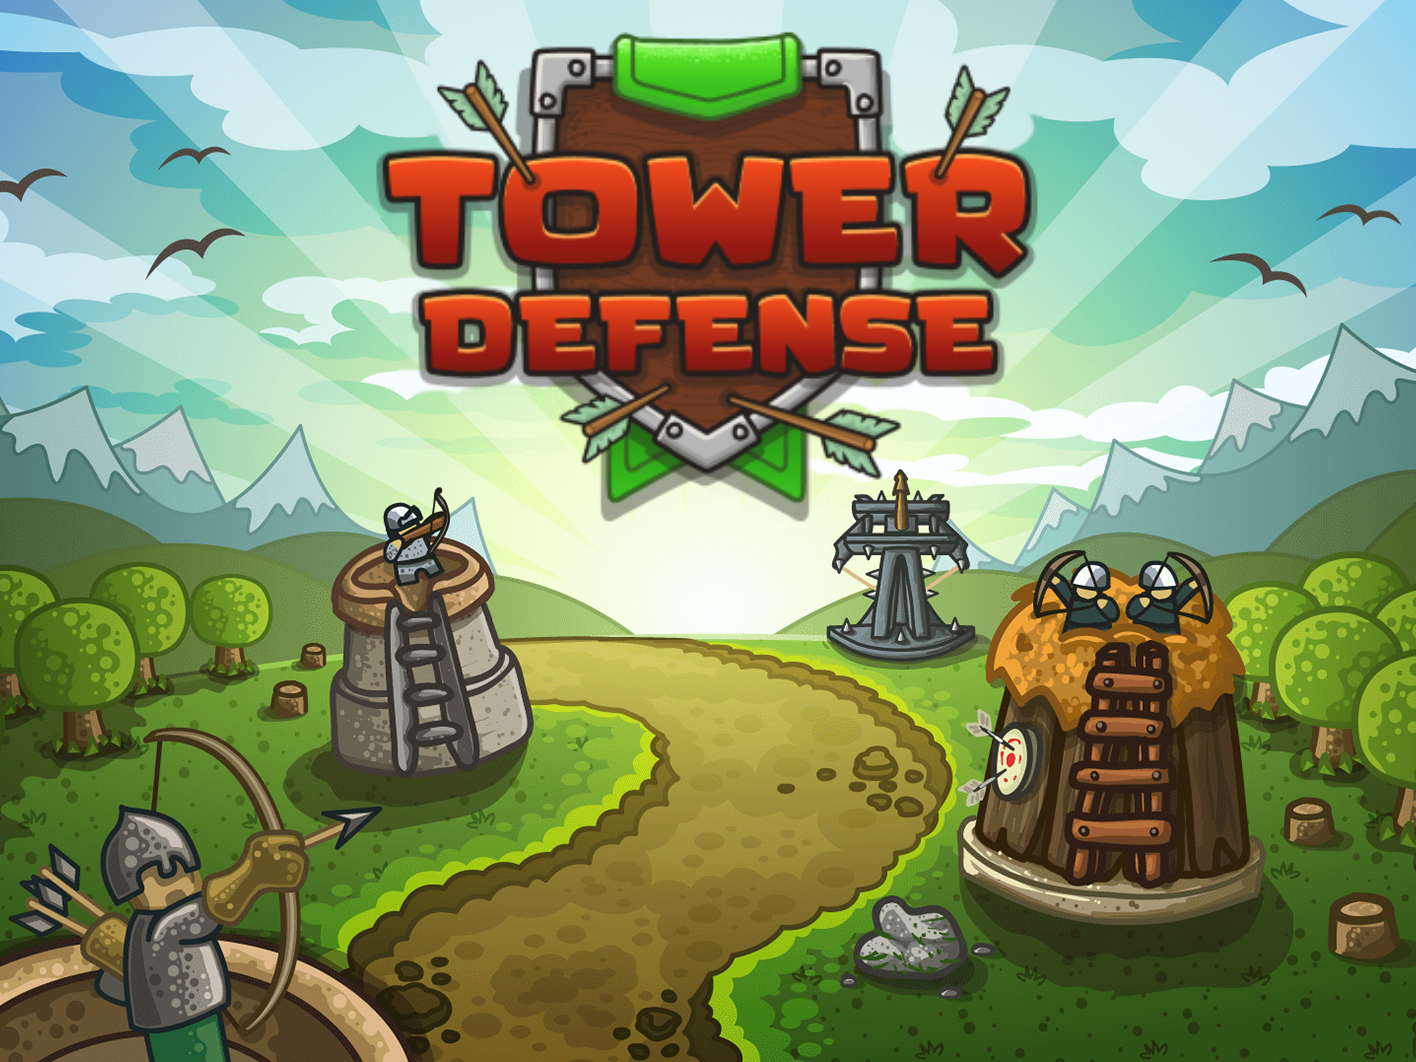 Включи игра башни. Tower Defense башни. Игра Tower Defense 1. Tower Defense башенки. Оборона башни / Tower Defense.